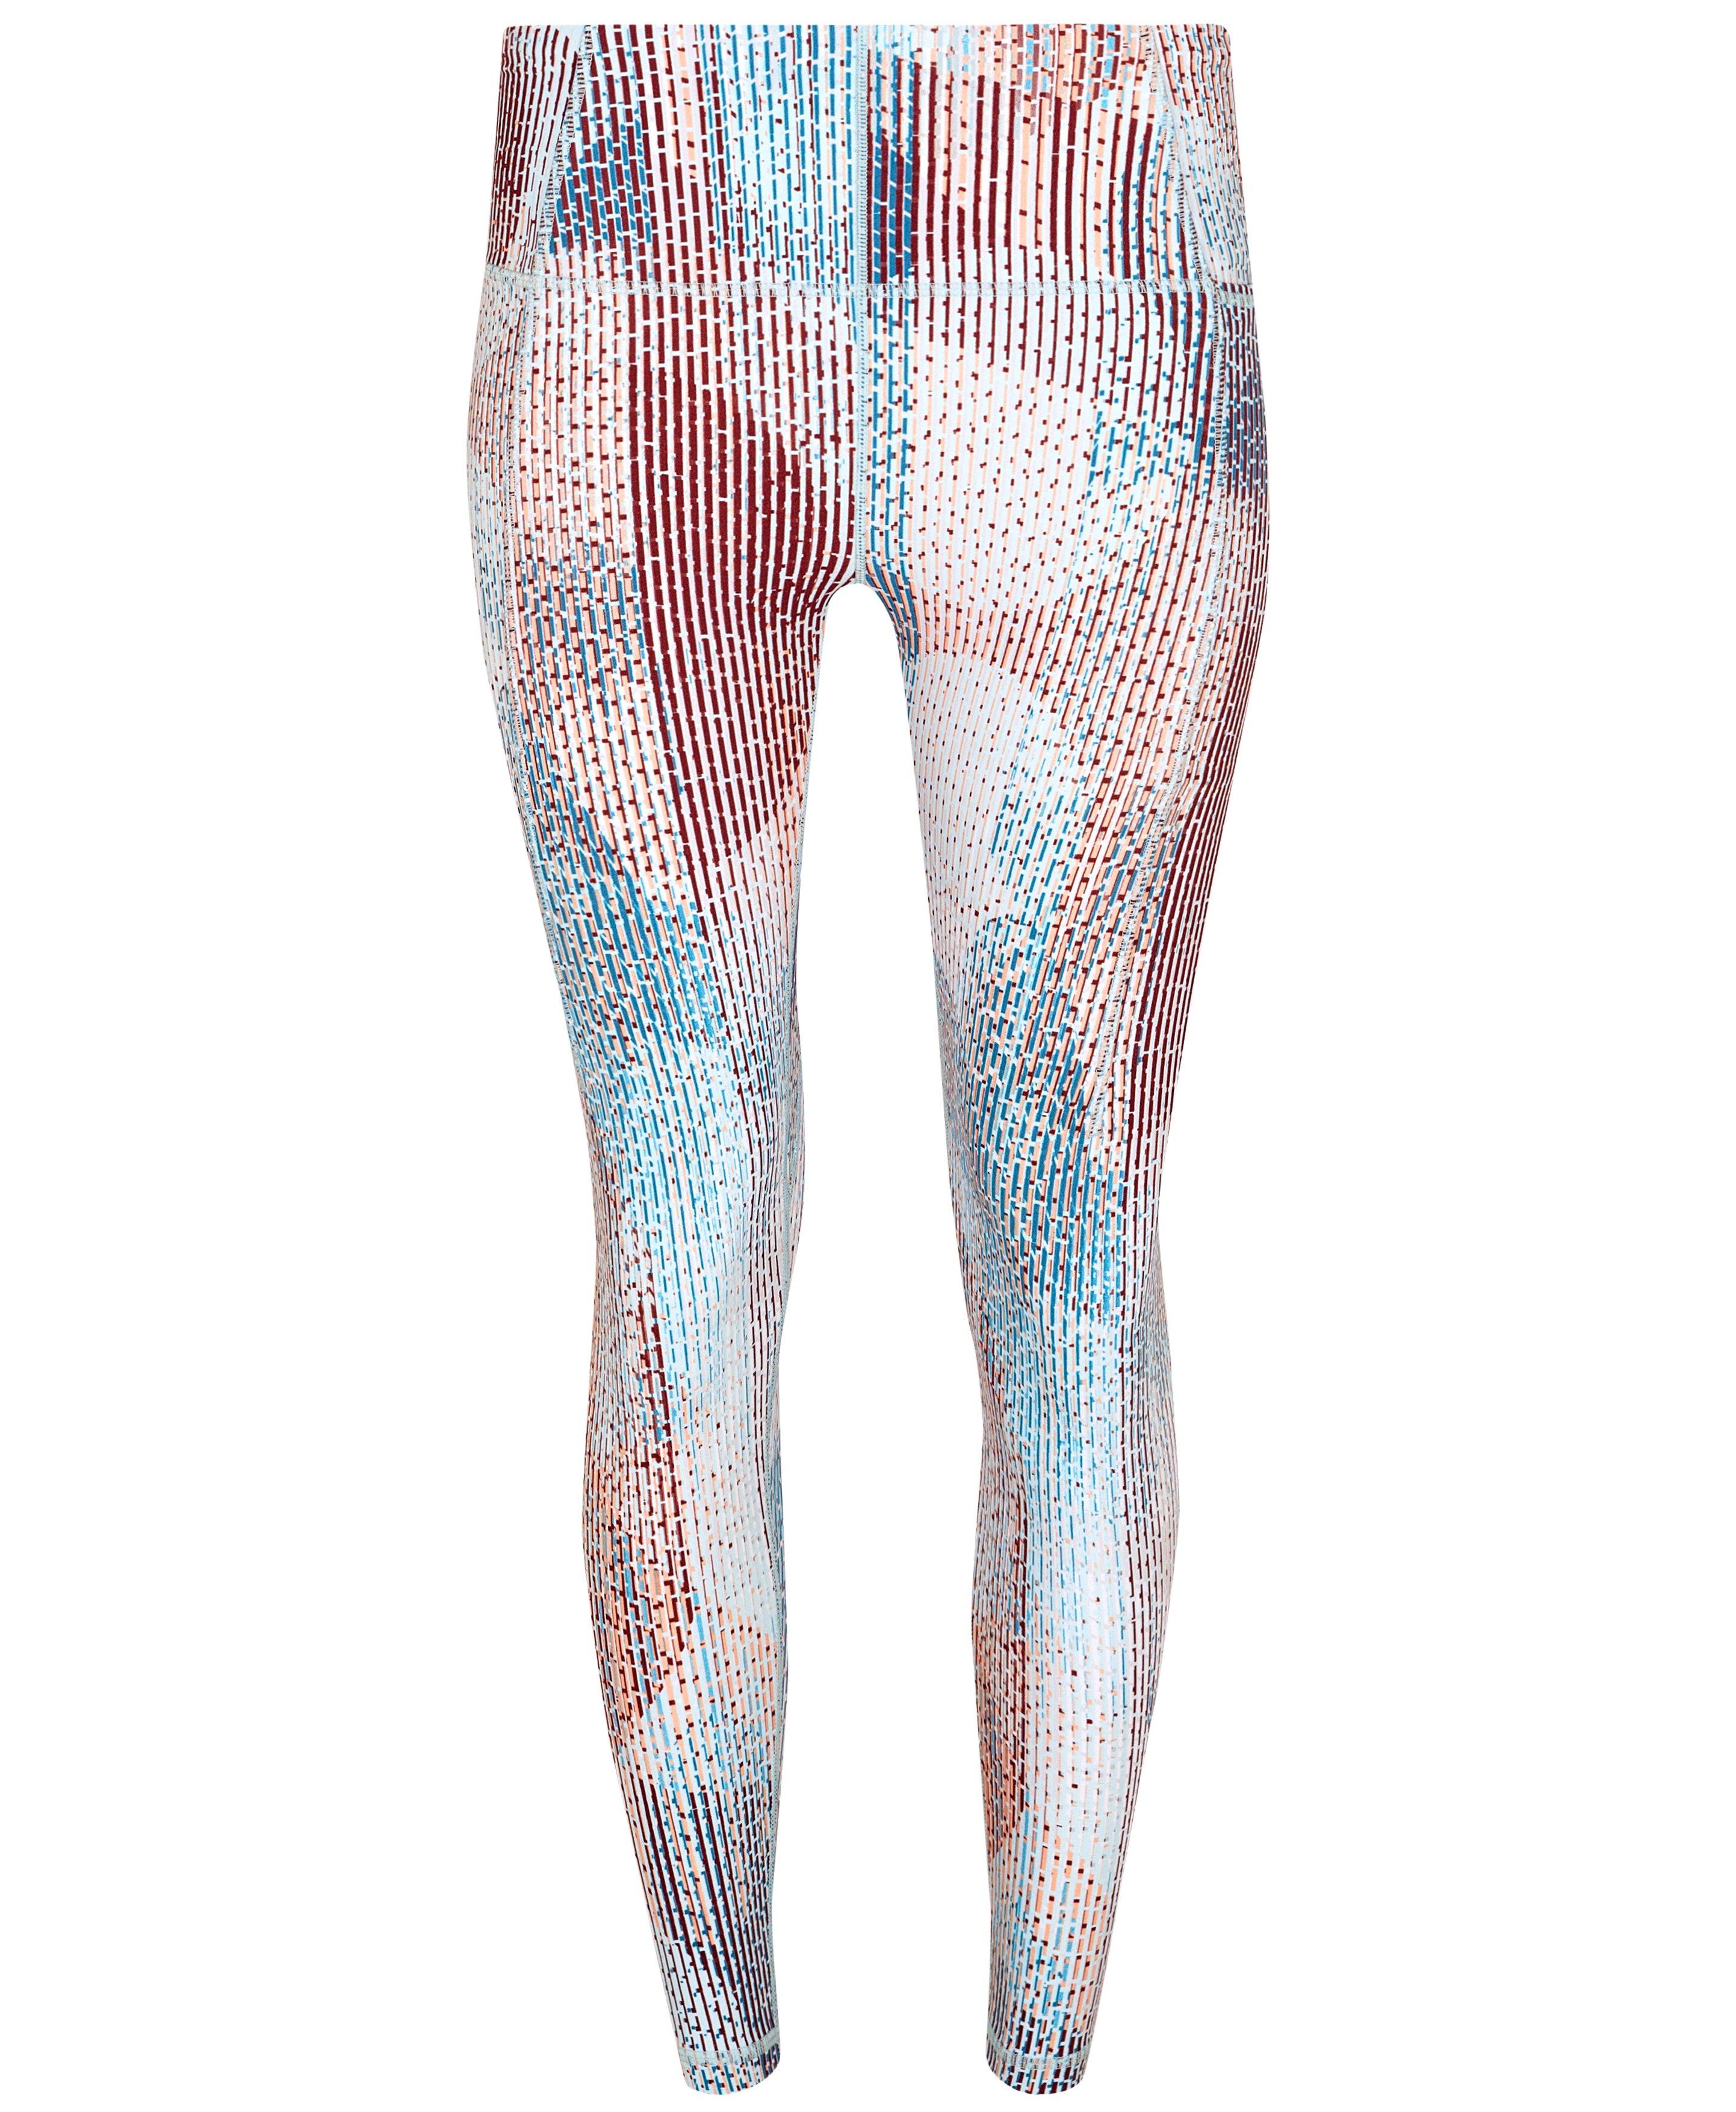 Super Soft 7/8 Yoga Leggings - Blue Marble Speckle Print, Women's Leggings